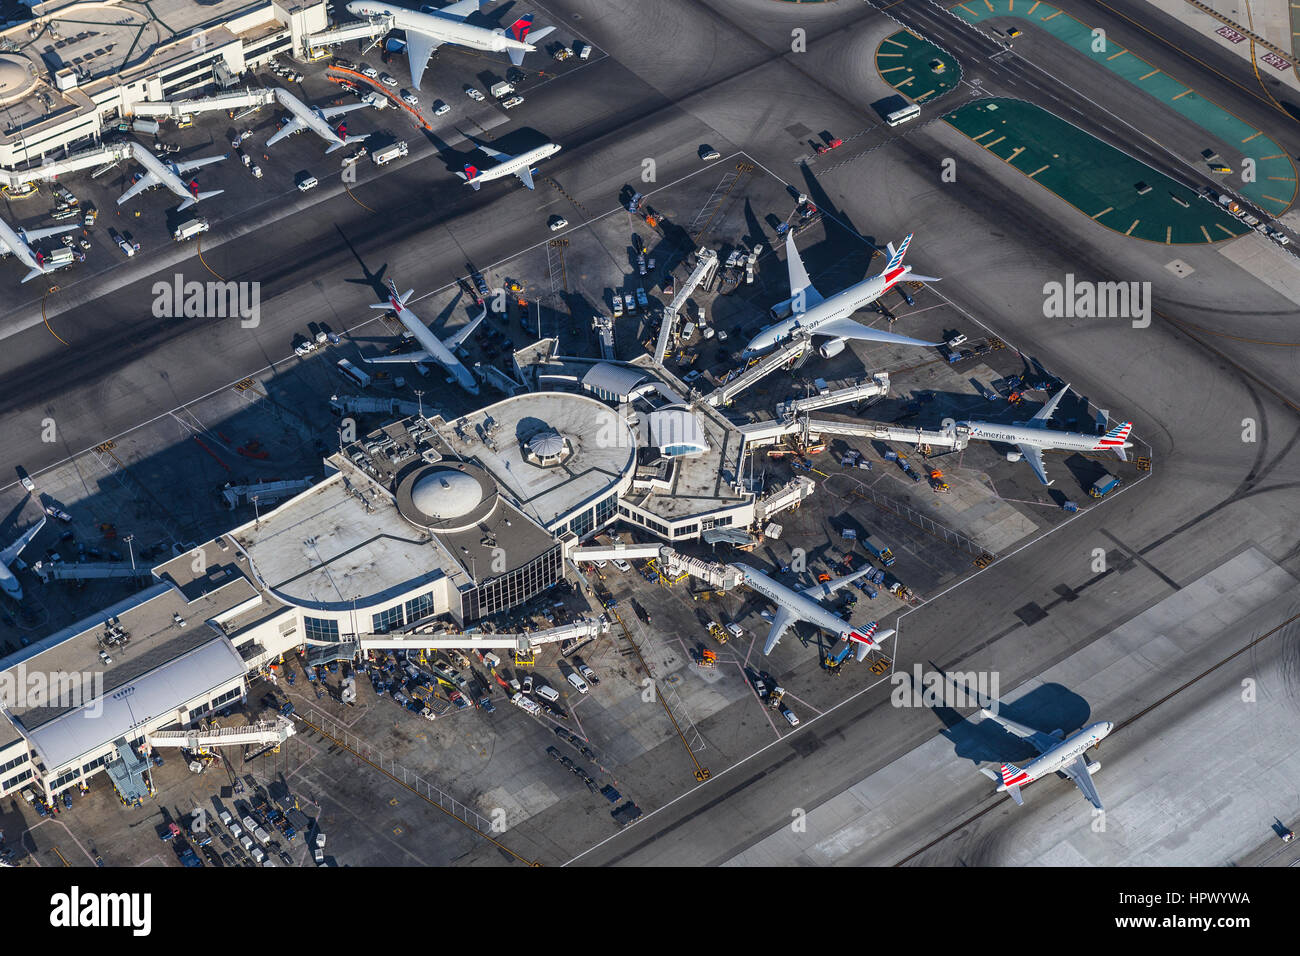 Los Angeles, Kalifornien, USA - 16. August 2016: Am Nachmittag Luftaufnahme des Jet-Flugzeuge und Terminals am Flughafen LAX. Stockfoto